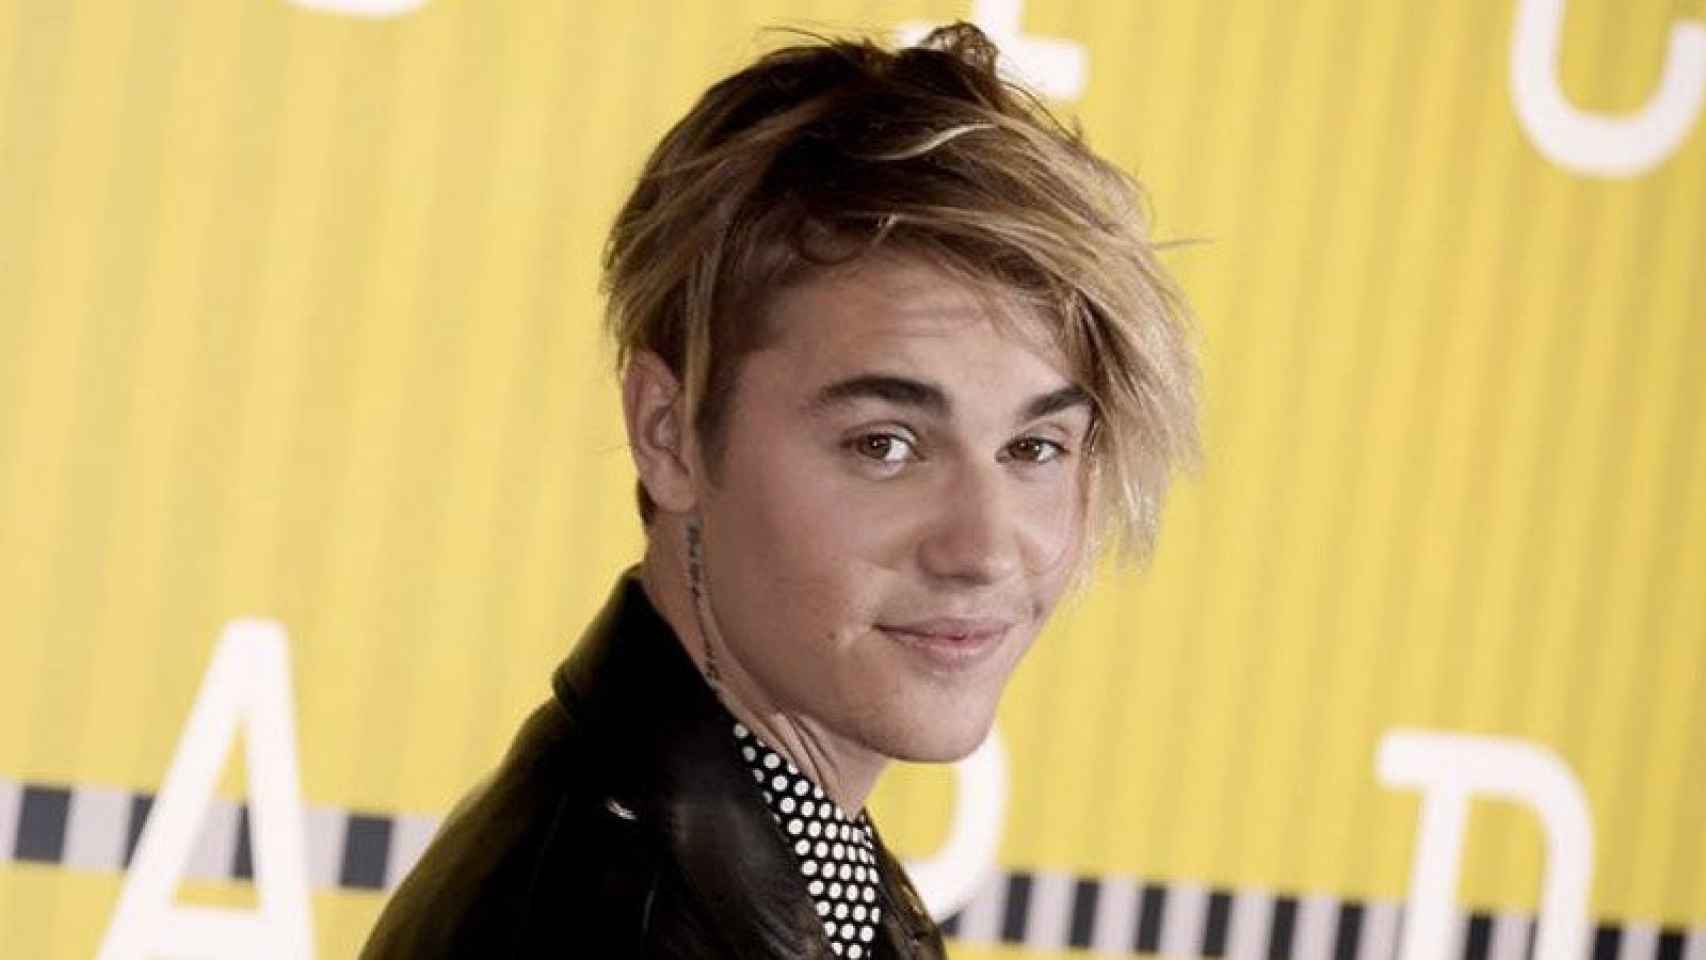 Las fans de Justin Bieber enloquecieron en su entrada a los premios MTV, se había cambiado el peinado